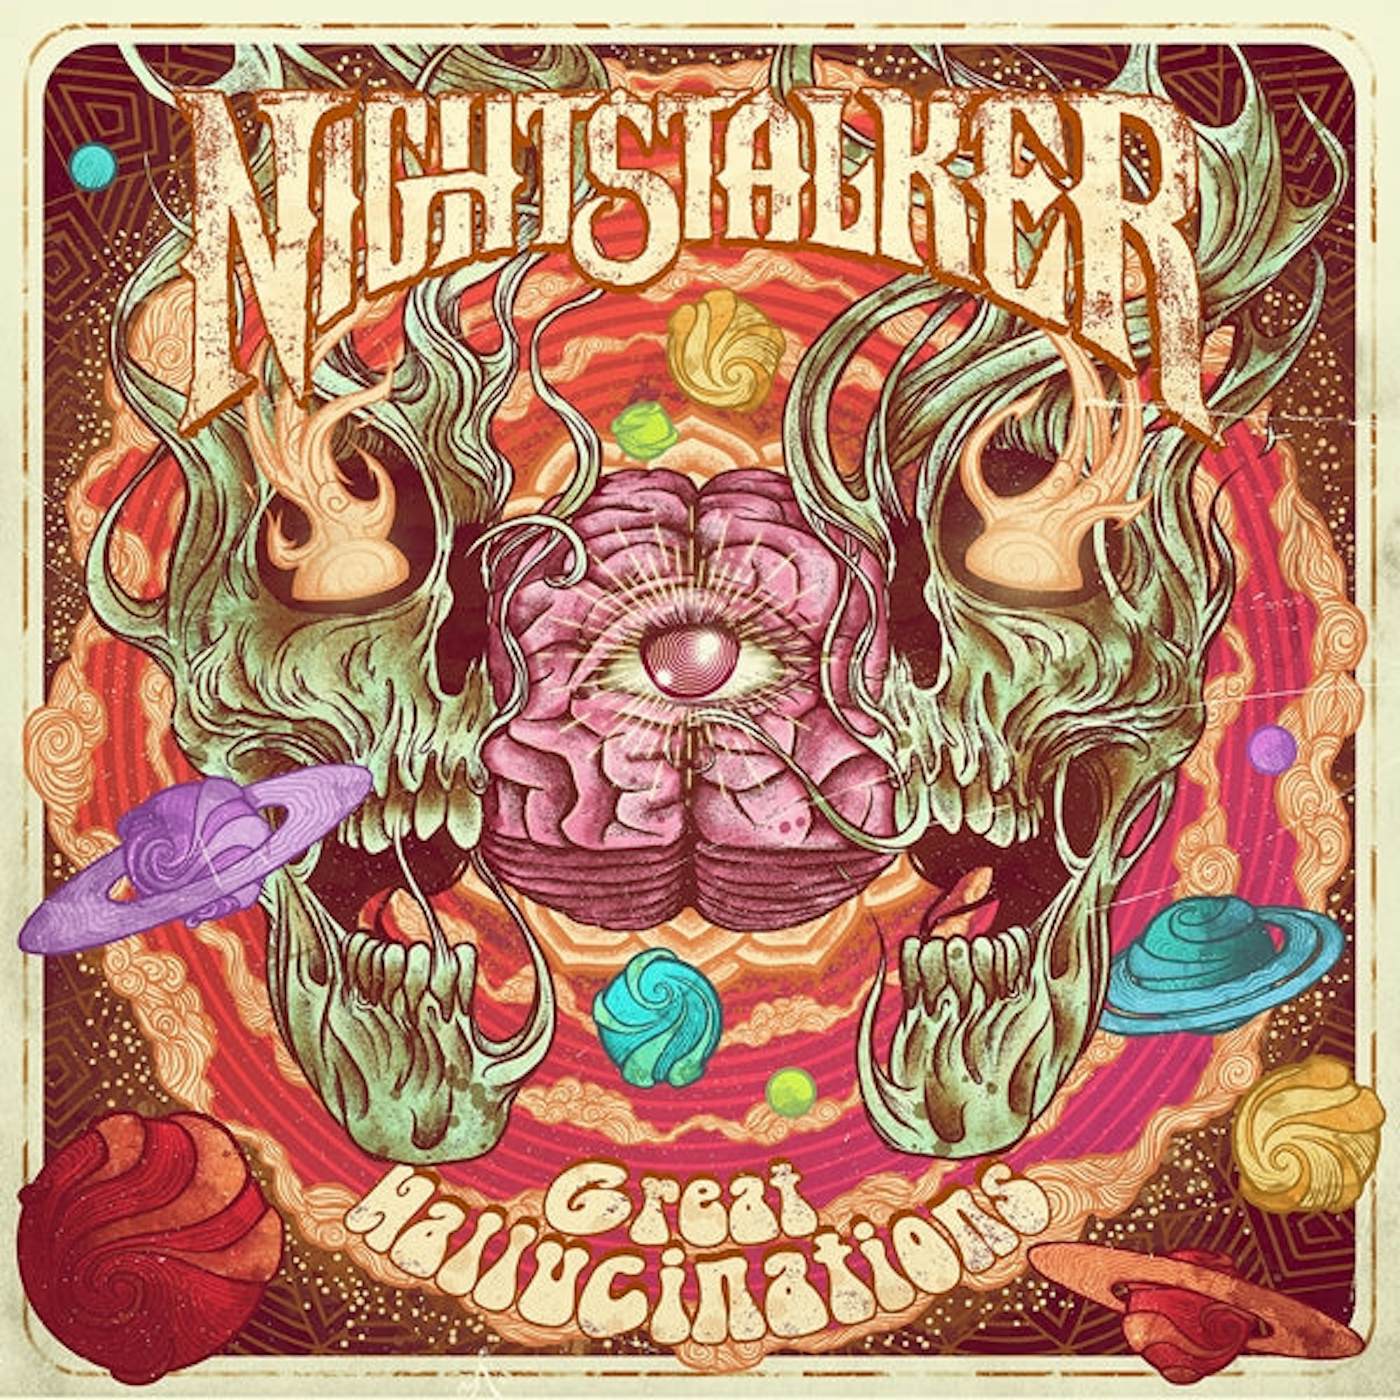 Nightstalker LP - Great Hallucinations (Vinyl)